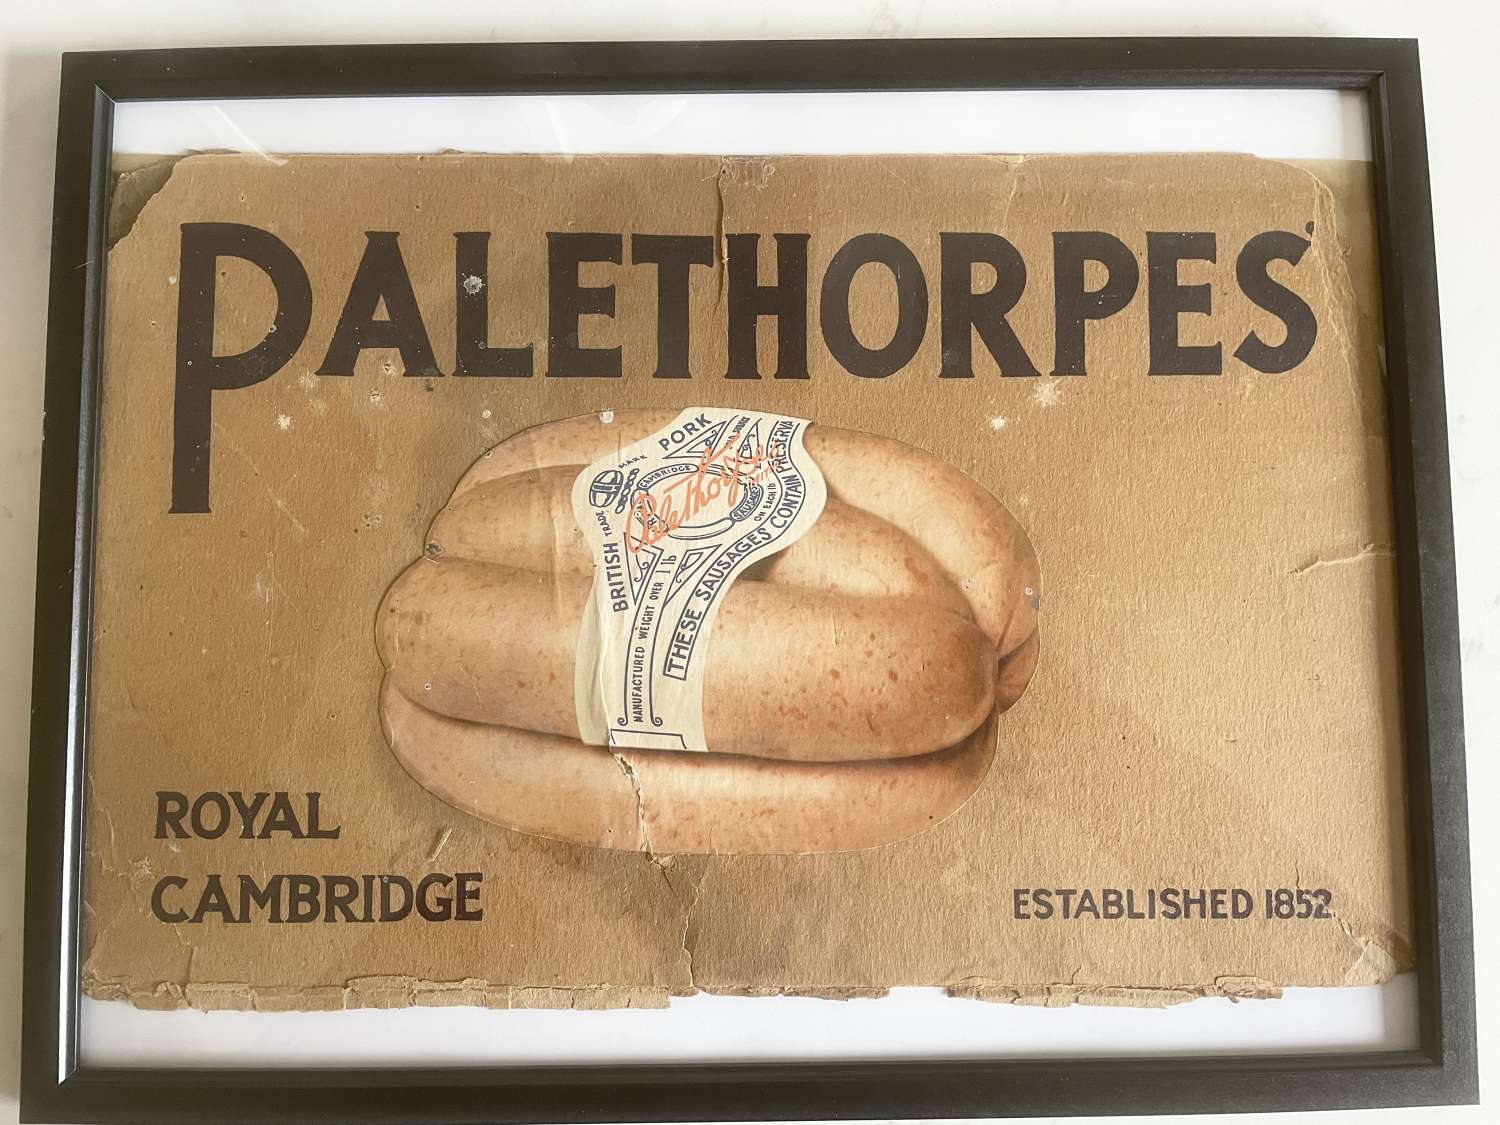 Palethorpes Sausages Box Lid Framed